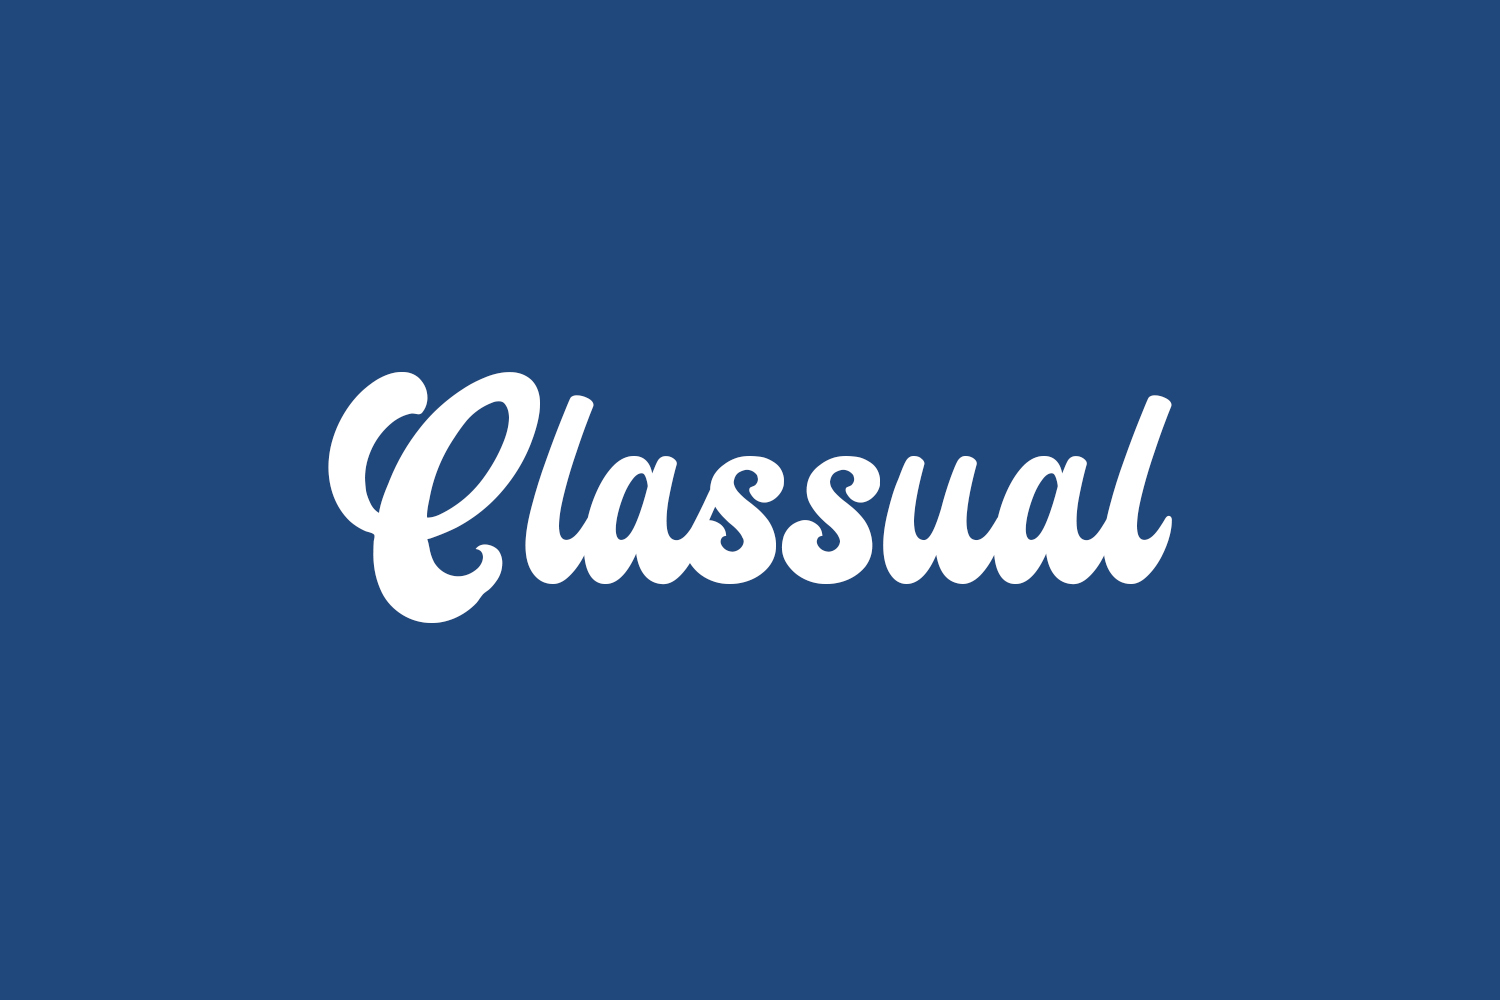 Classual Free Font